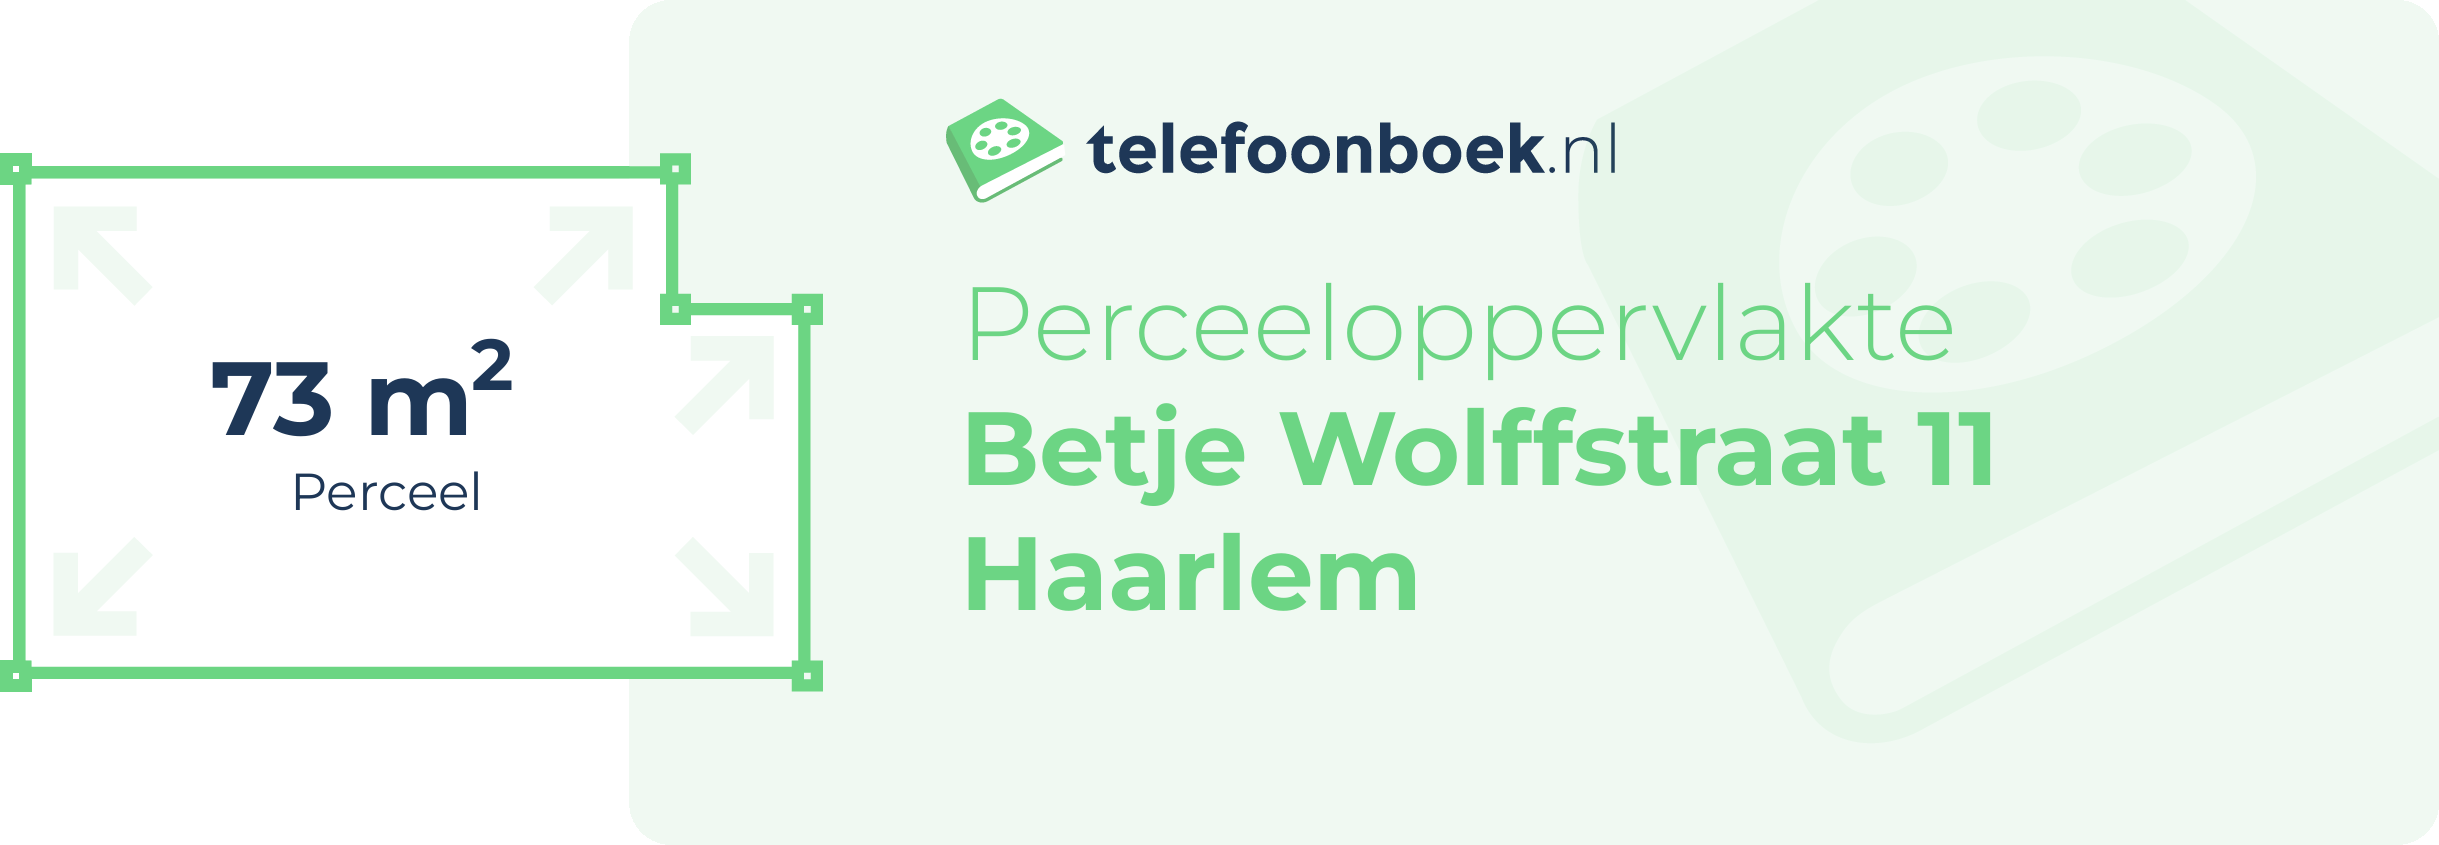 Perceeloppervlakte Betje Wolffstraat 11 Haarlem